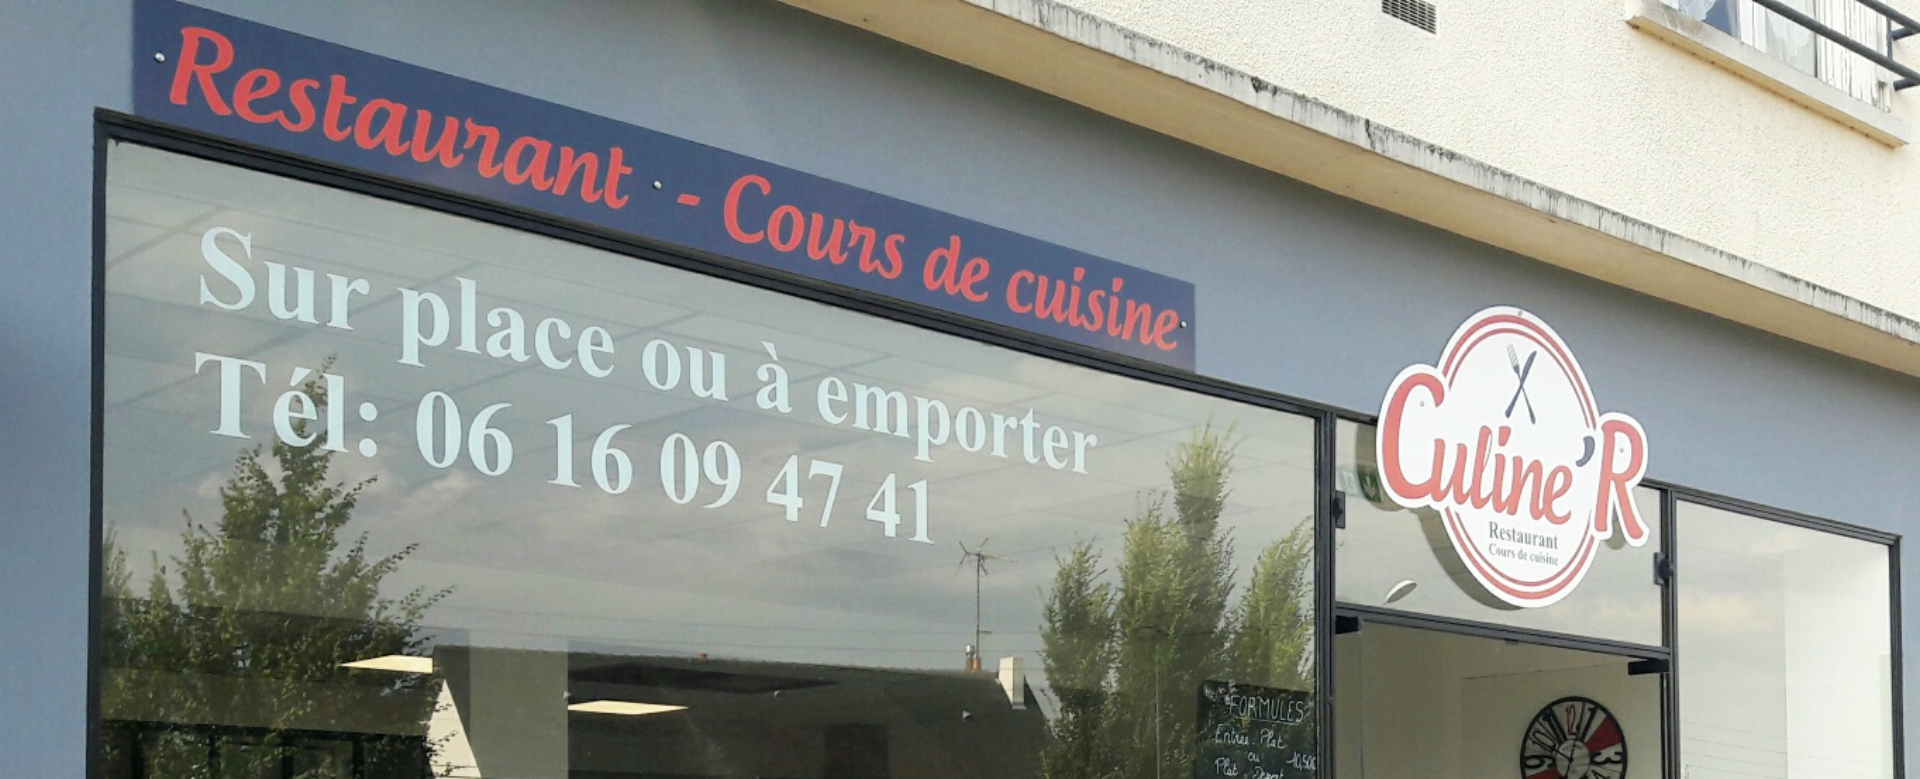 culiner_restaurant_vitre_cours_de_cuisine_plat_a_emporter_35_53_